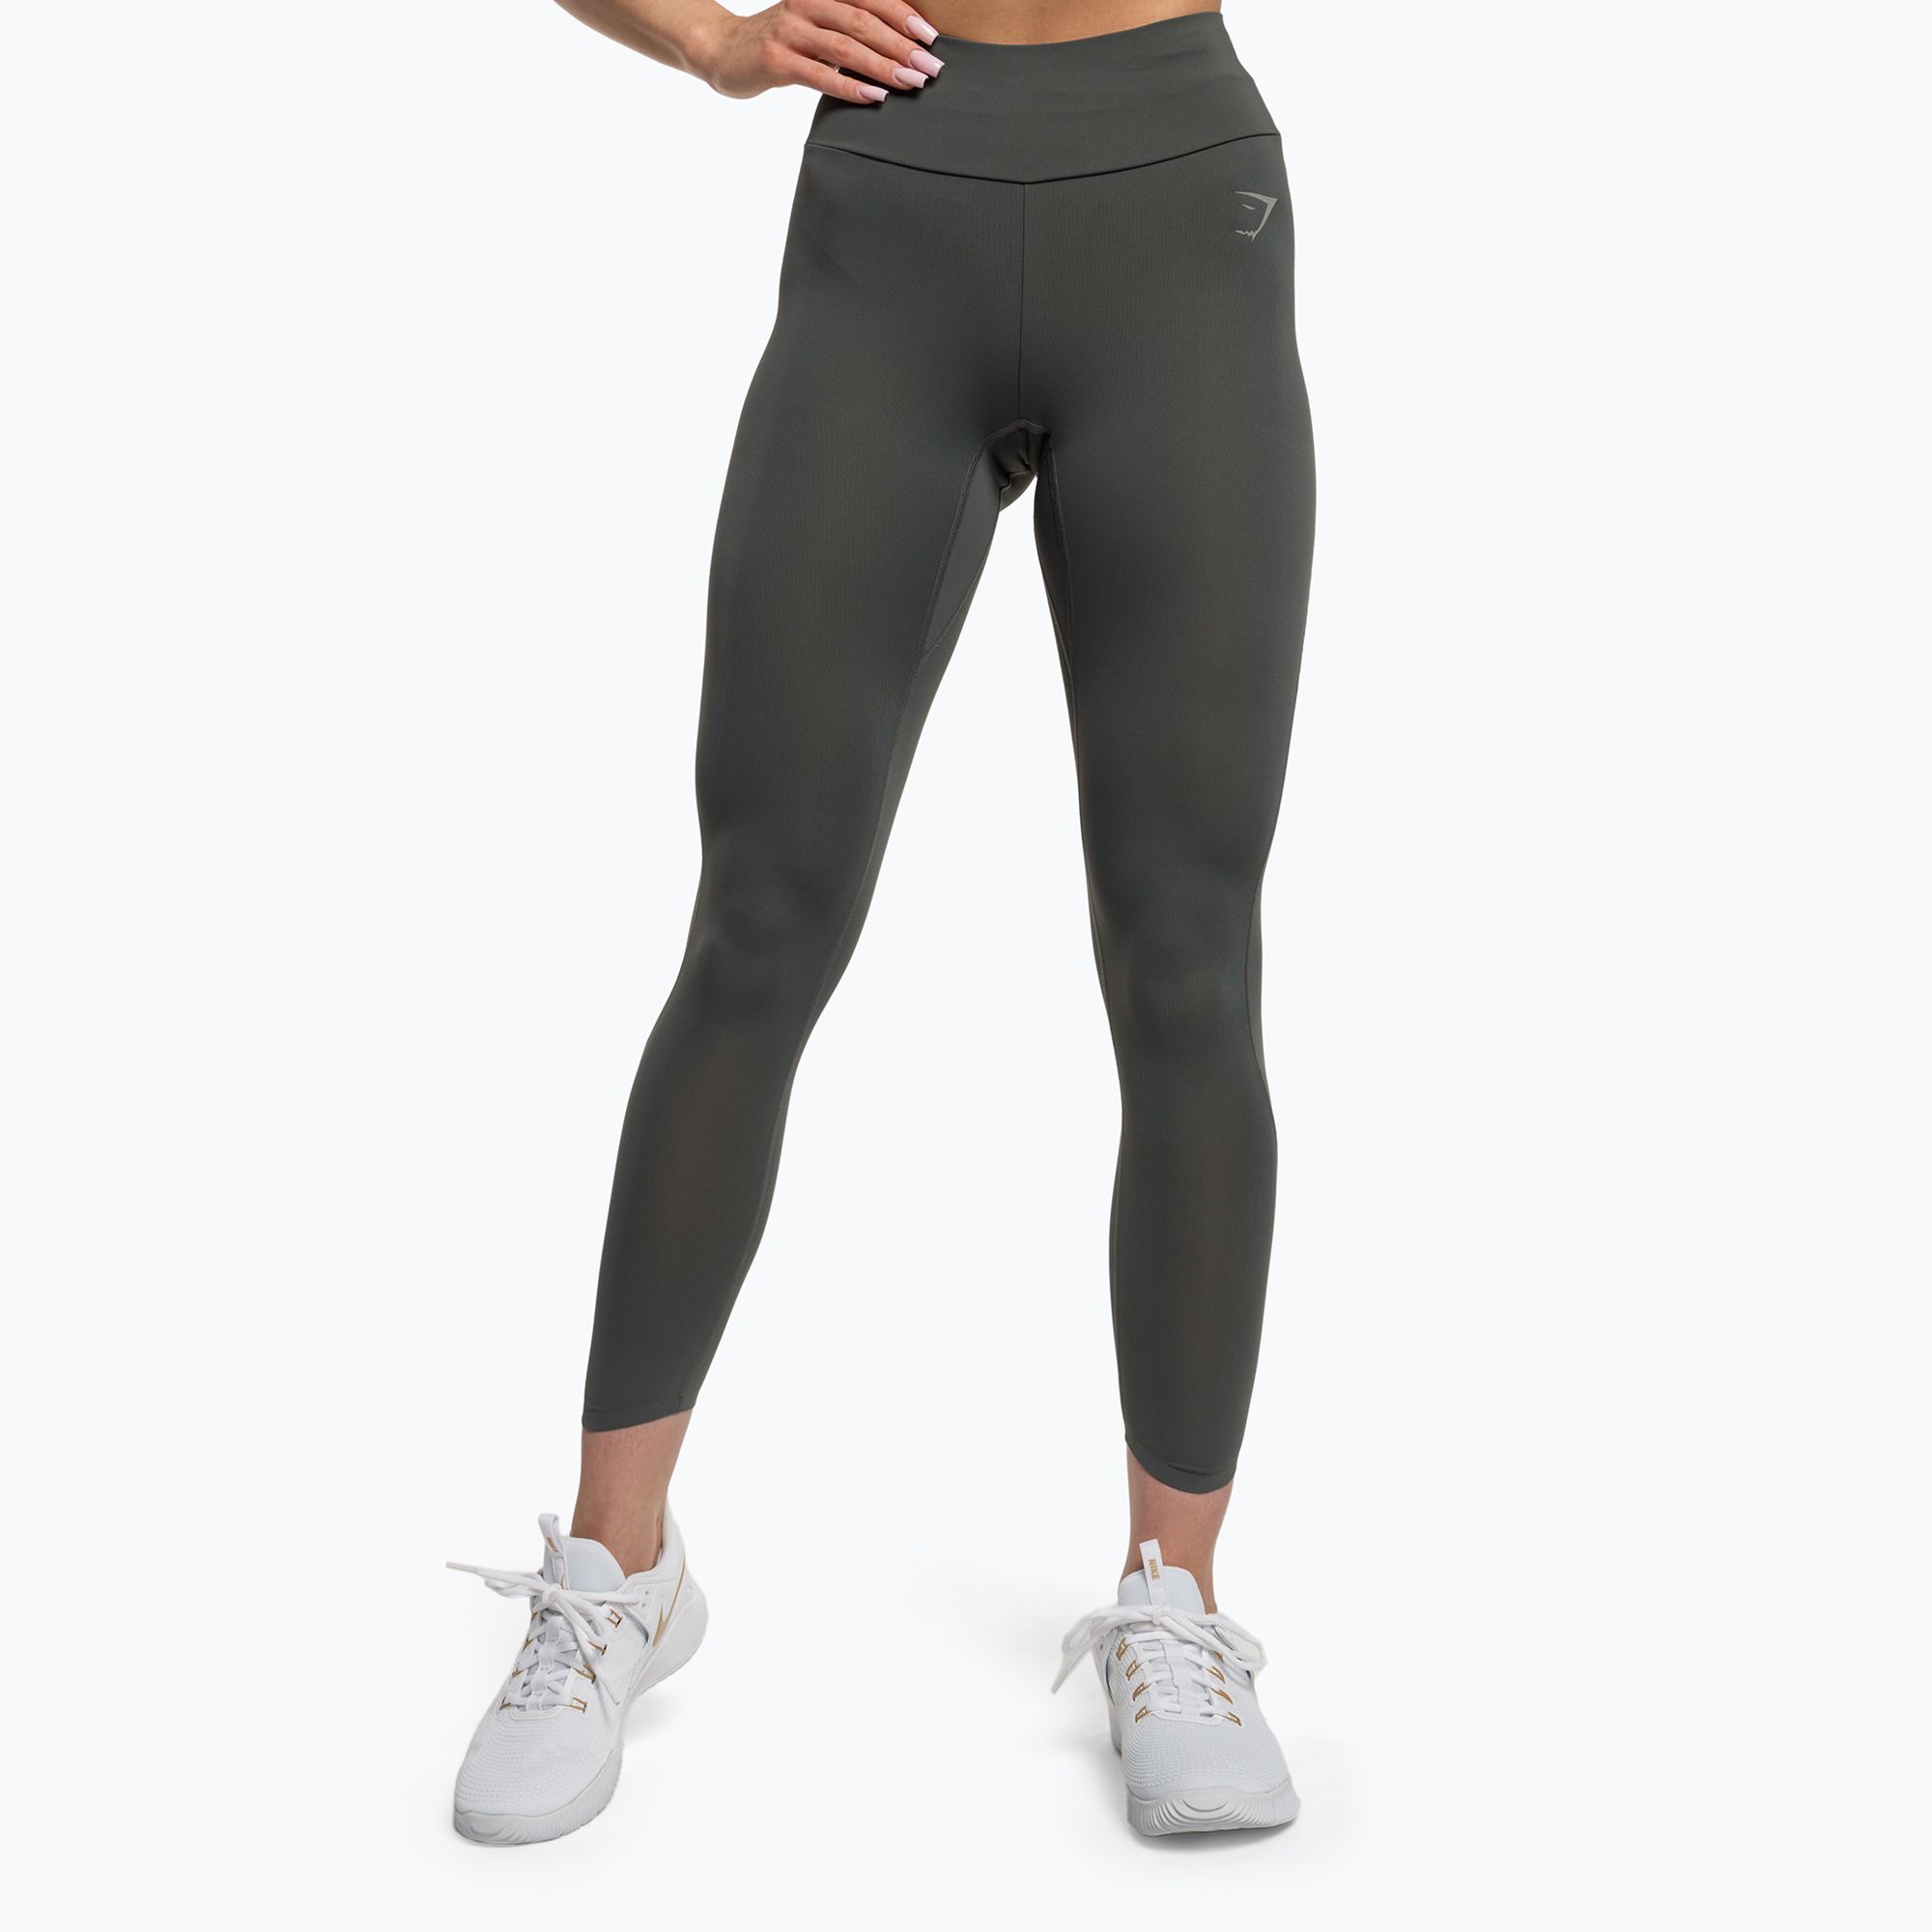 https://sportano.com/img/986c30c27a3d26a3ee16c136f92f4ff5/5/0/5057913522926_1-jpg/women-s-training-leggings-gymshark-speed-charcoal-grey-0.jpg